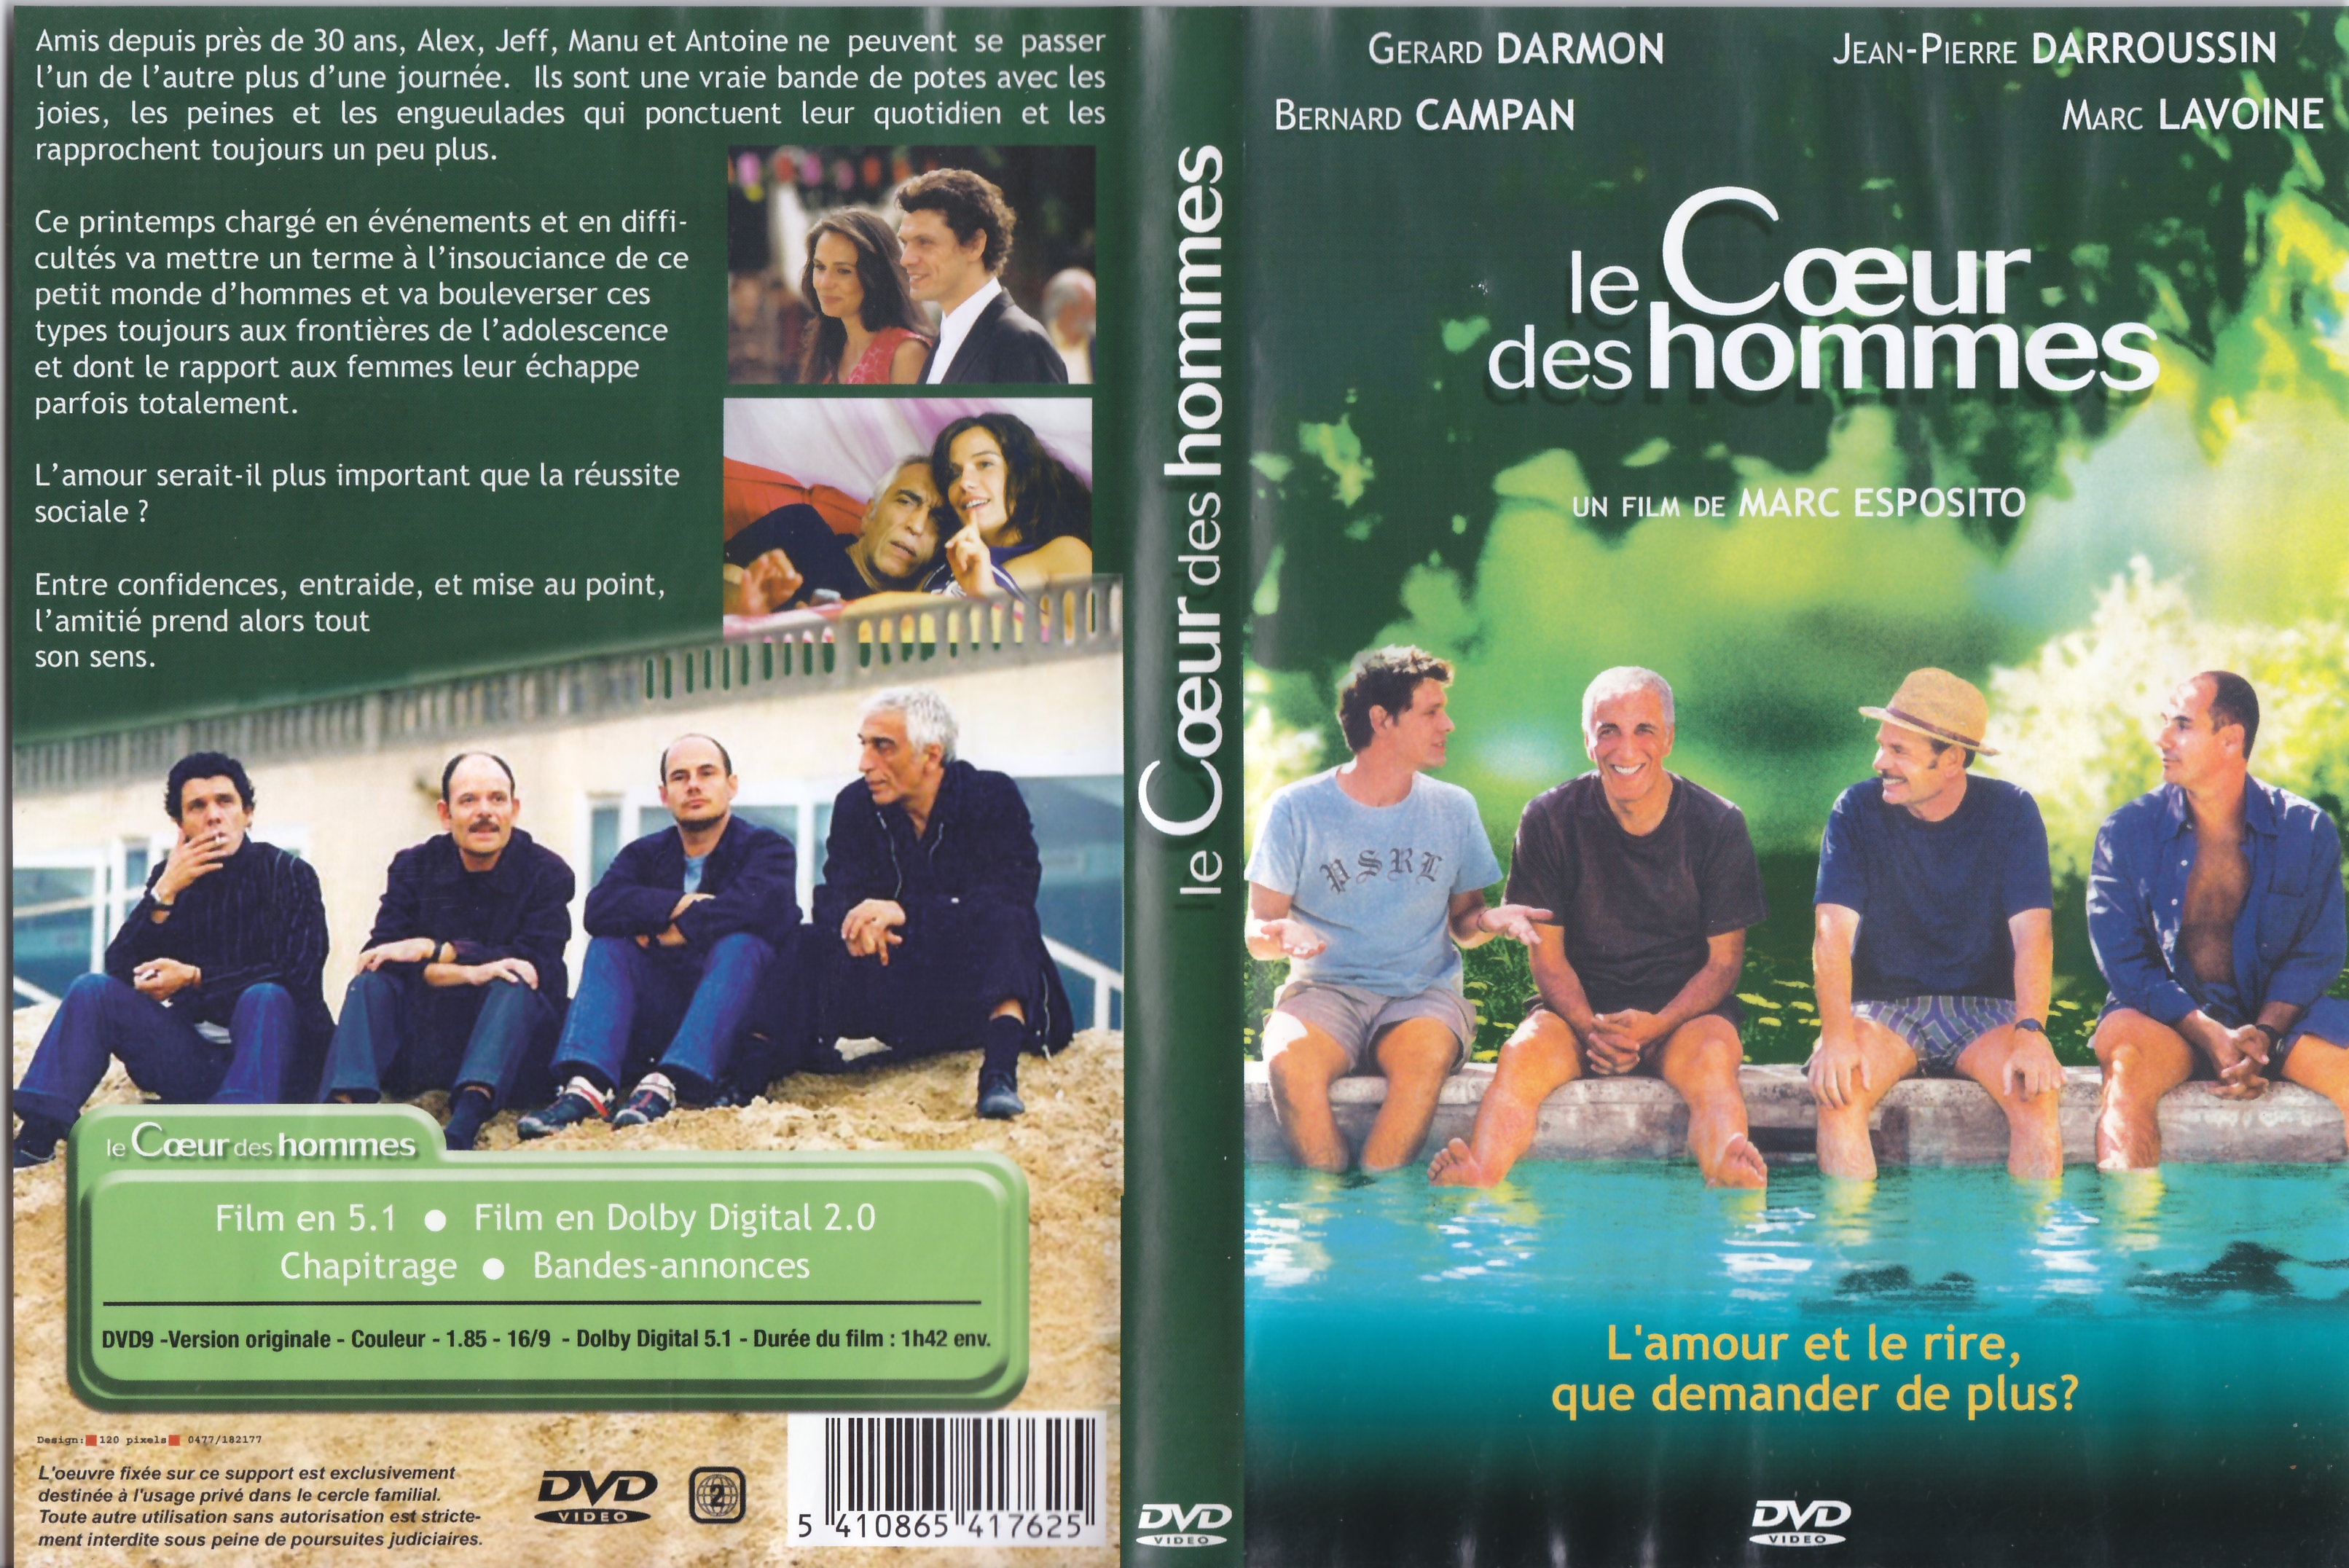 Jaquette DVD Le coeur des hommes v4